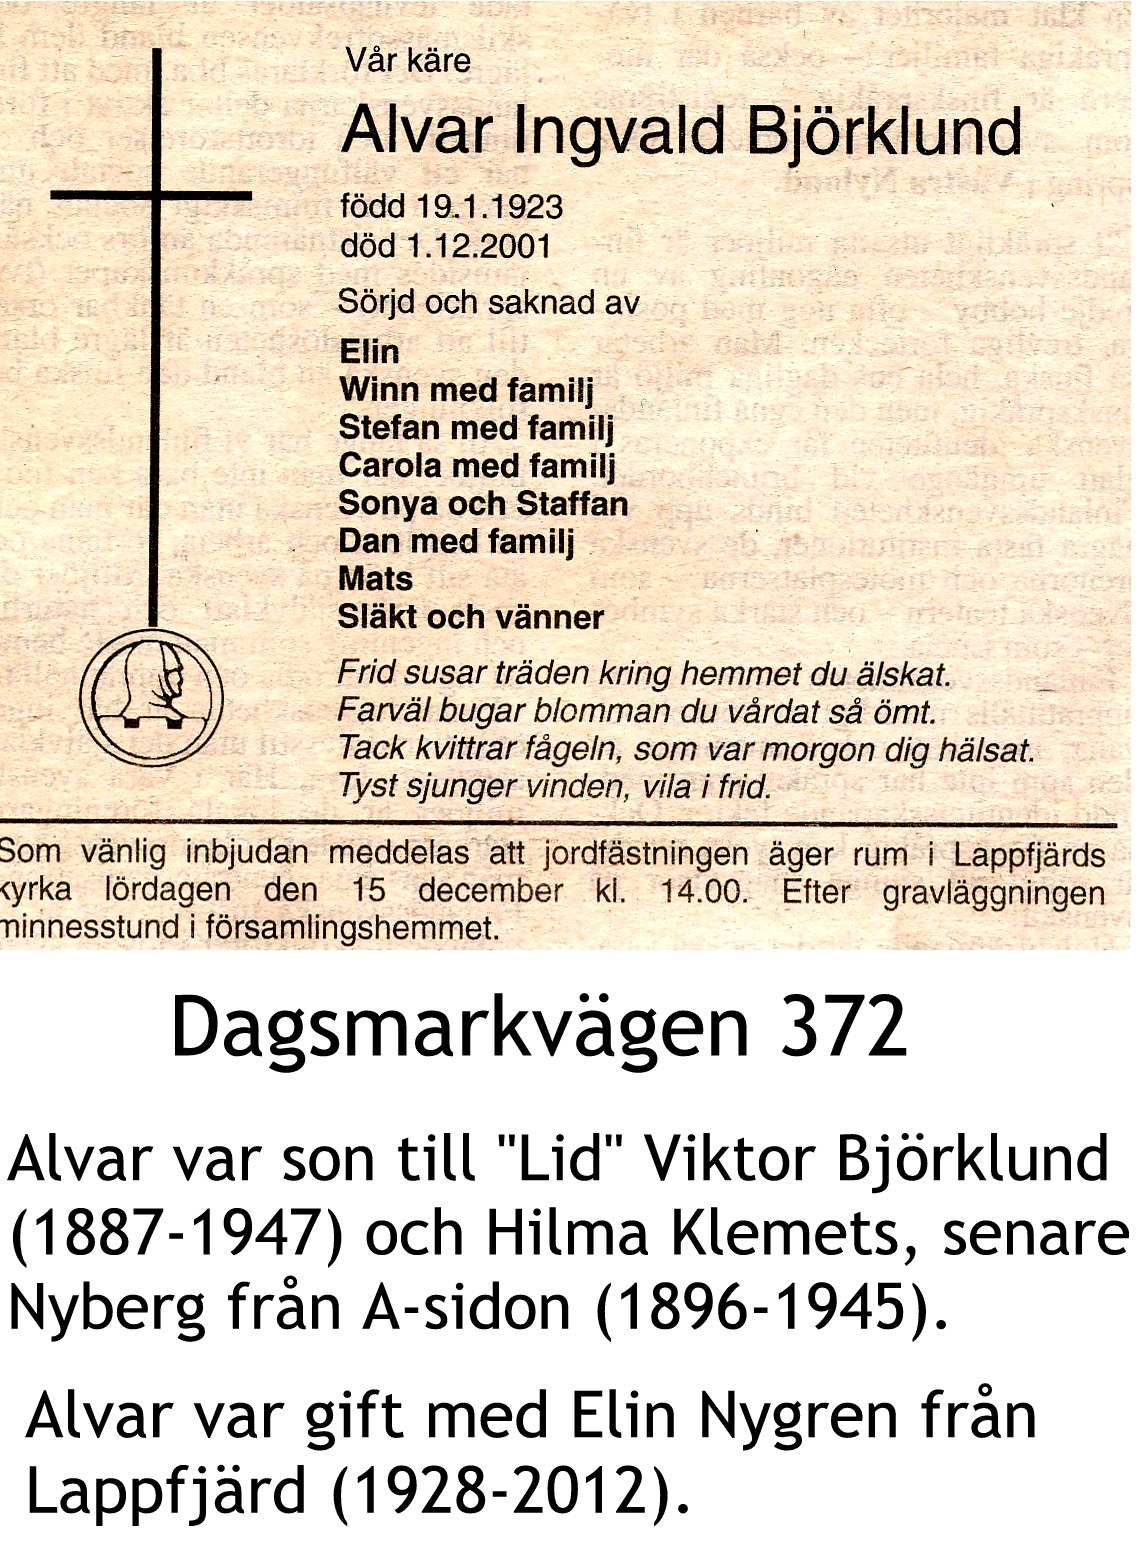 Björklund Alvar Ingvald